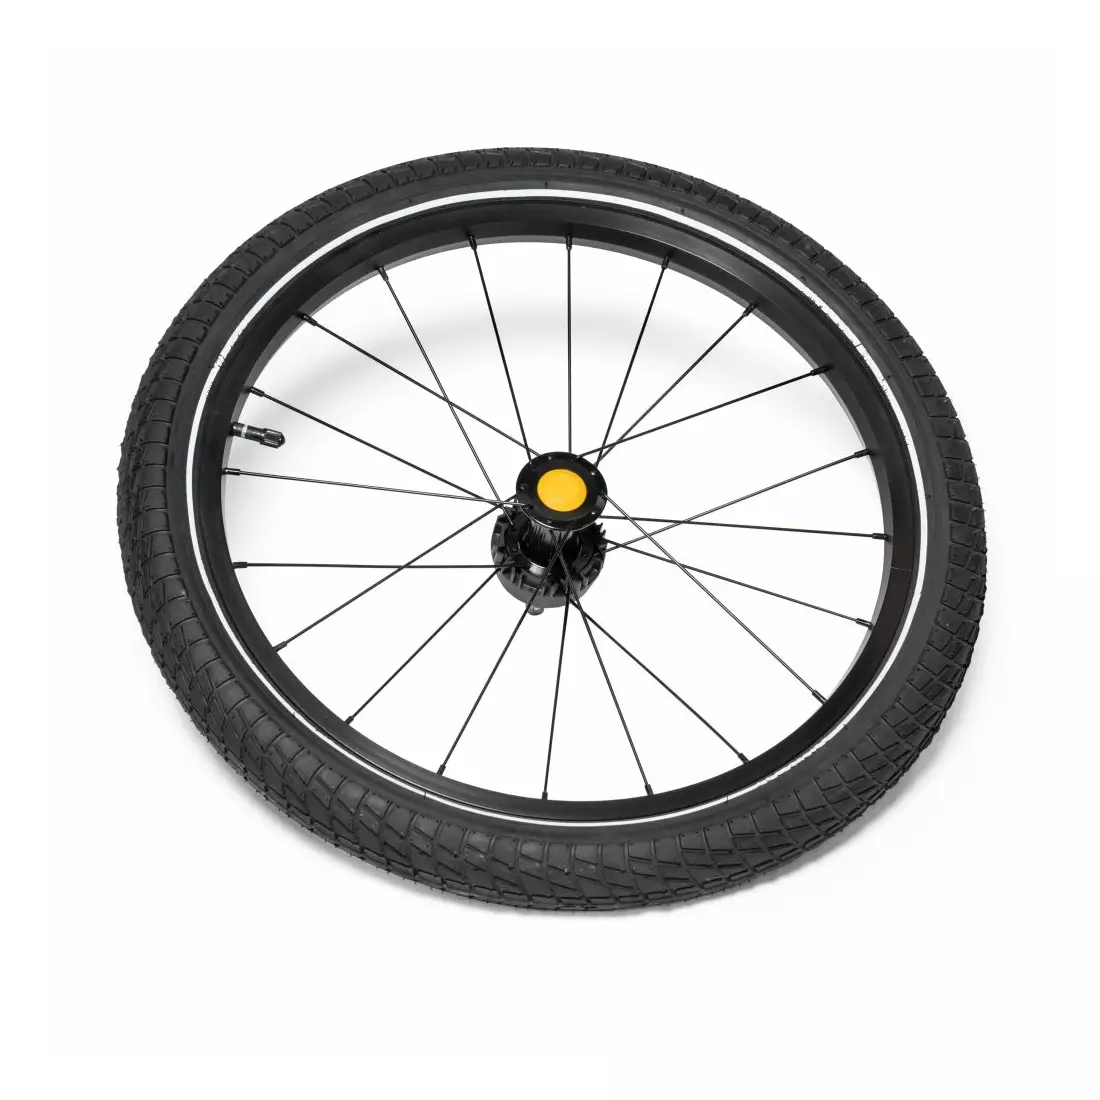 BURLEY bicycle trailer wheel 20&quot; (d'lite, d'lite x, d'lite single, cub x) BU-160094